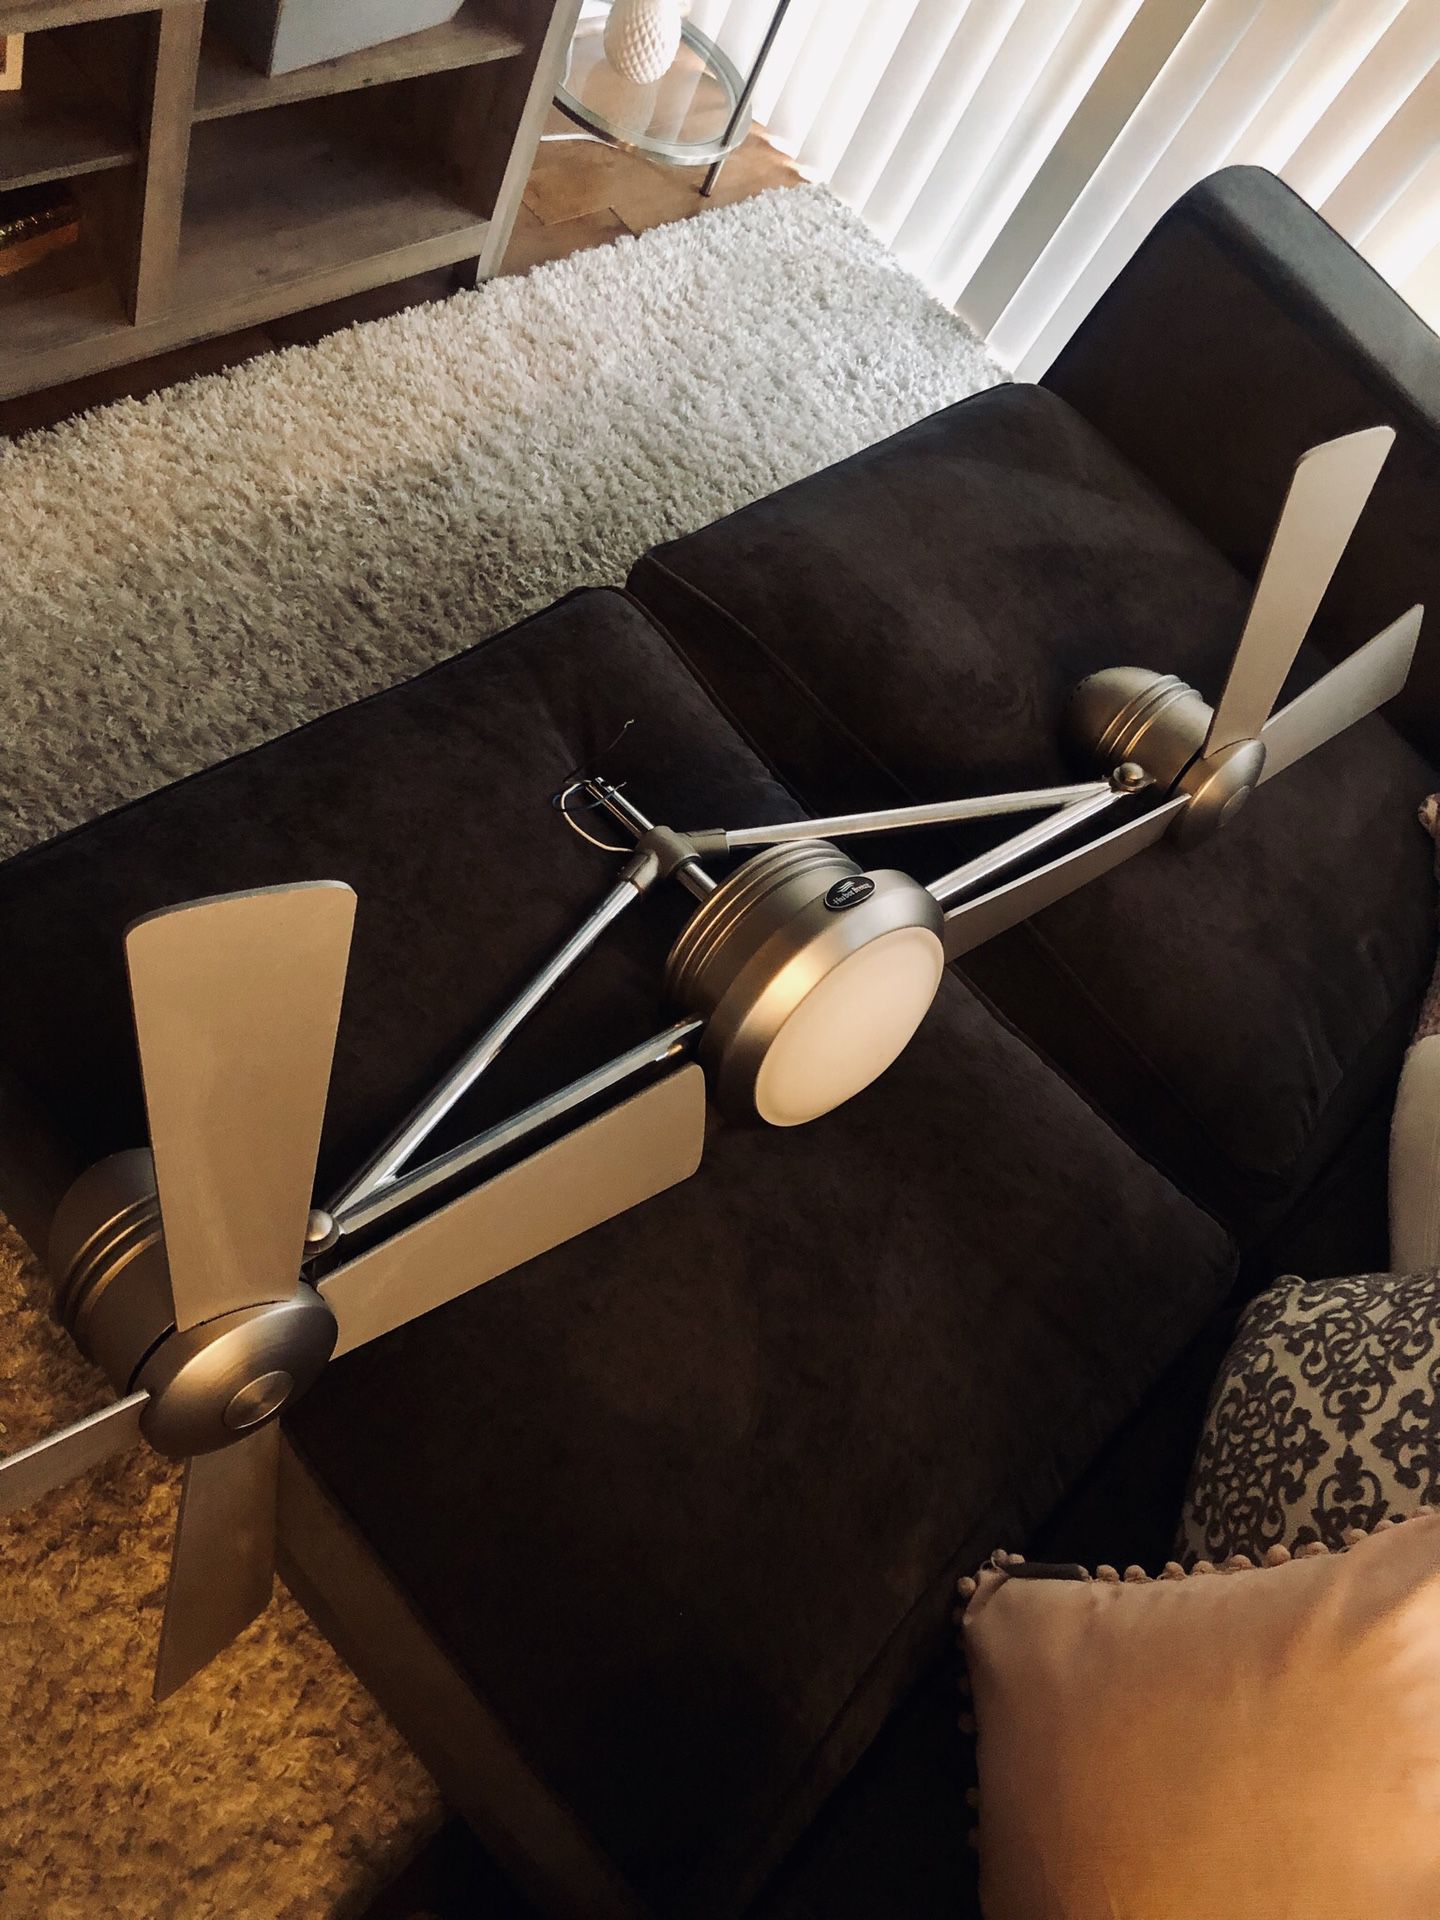 Harbor Breeze 52” Ceiling fan dual blade